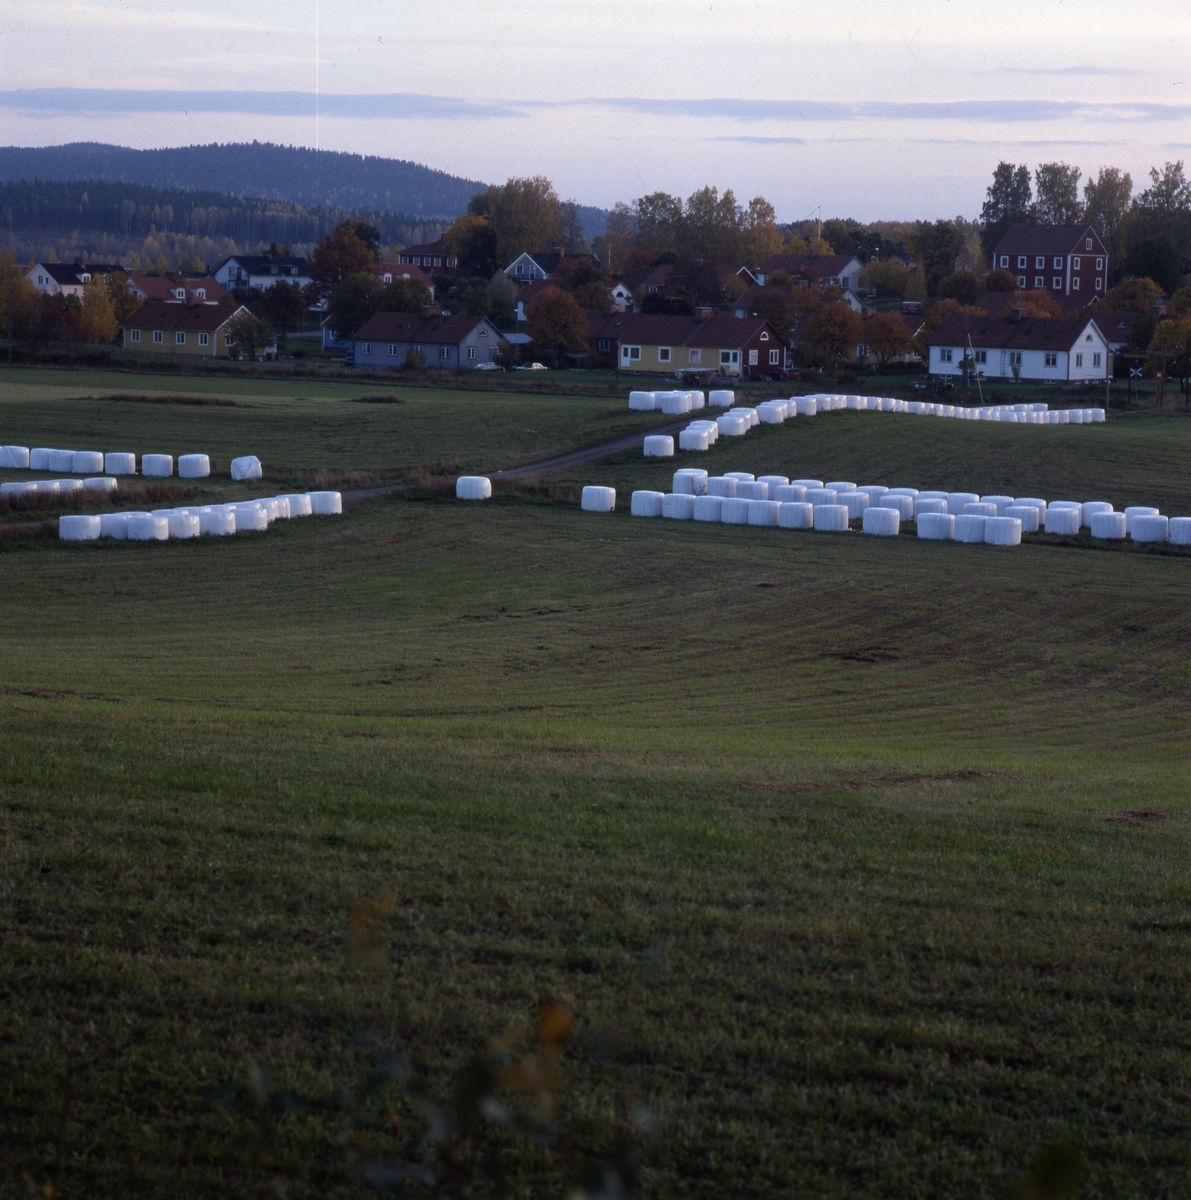 Odlingslandskap i höstfärger med långa rader av ensilagebalar i vit plast, "bonnägg", från sträckan Vansätter (Vansäter) - Bodarne 9 oktober 2001.